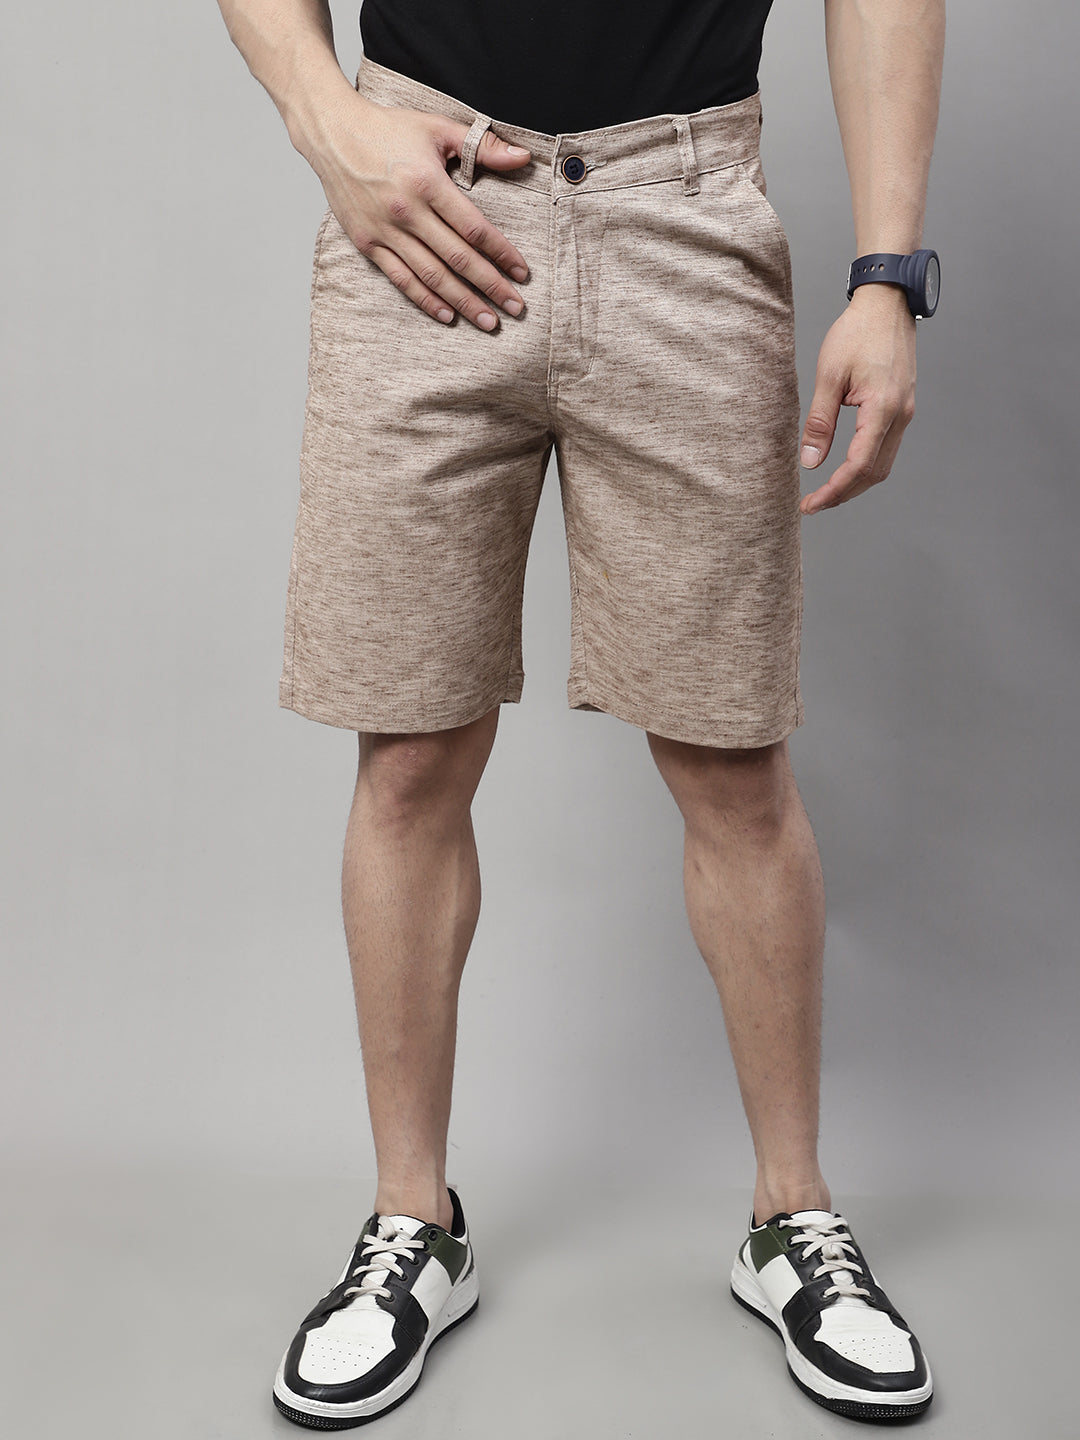 Trendsetting Men's Shorts - BROWN